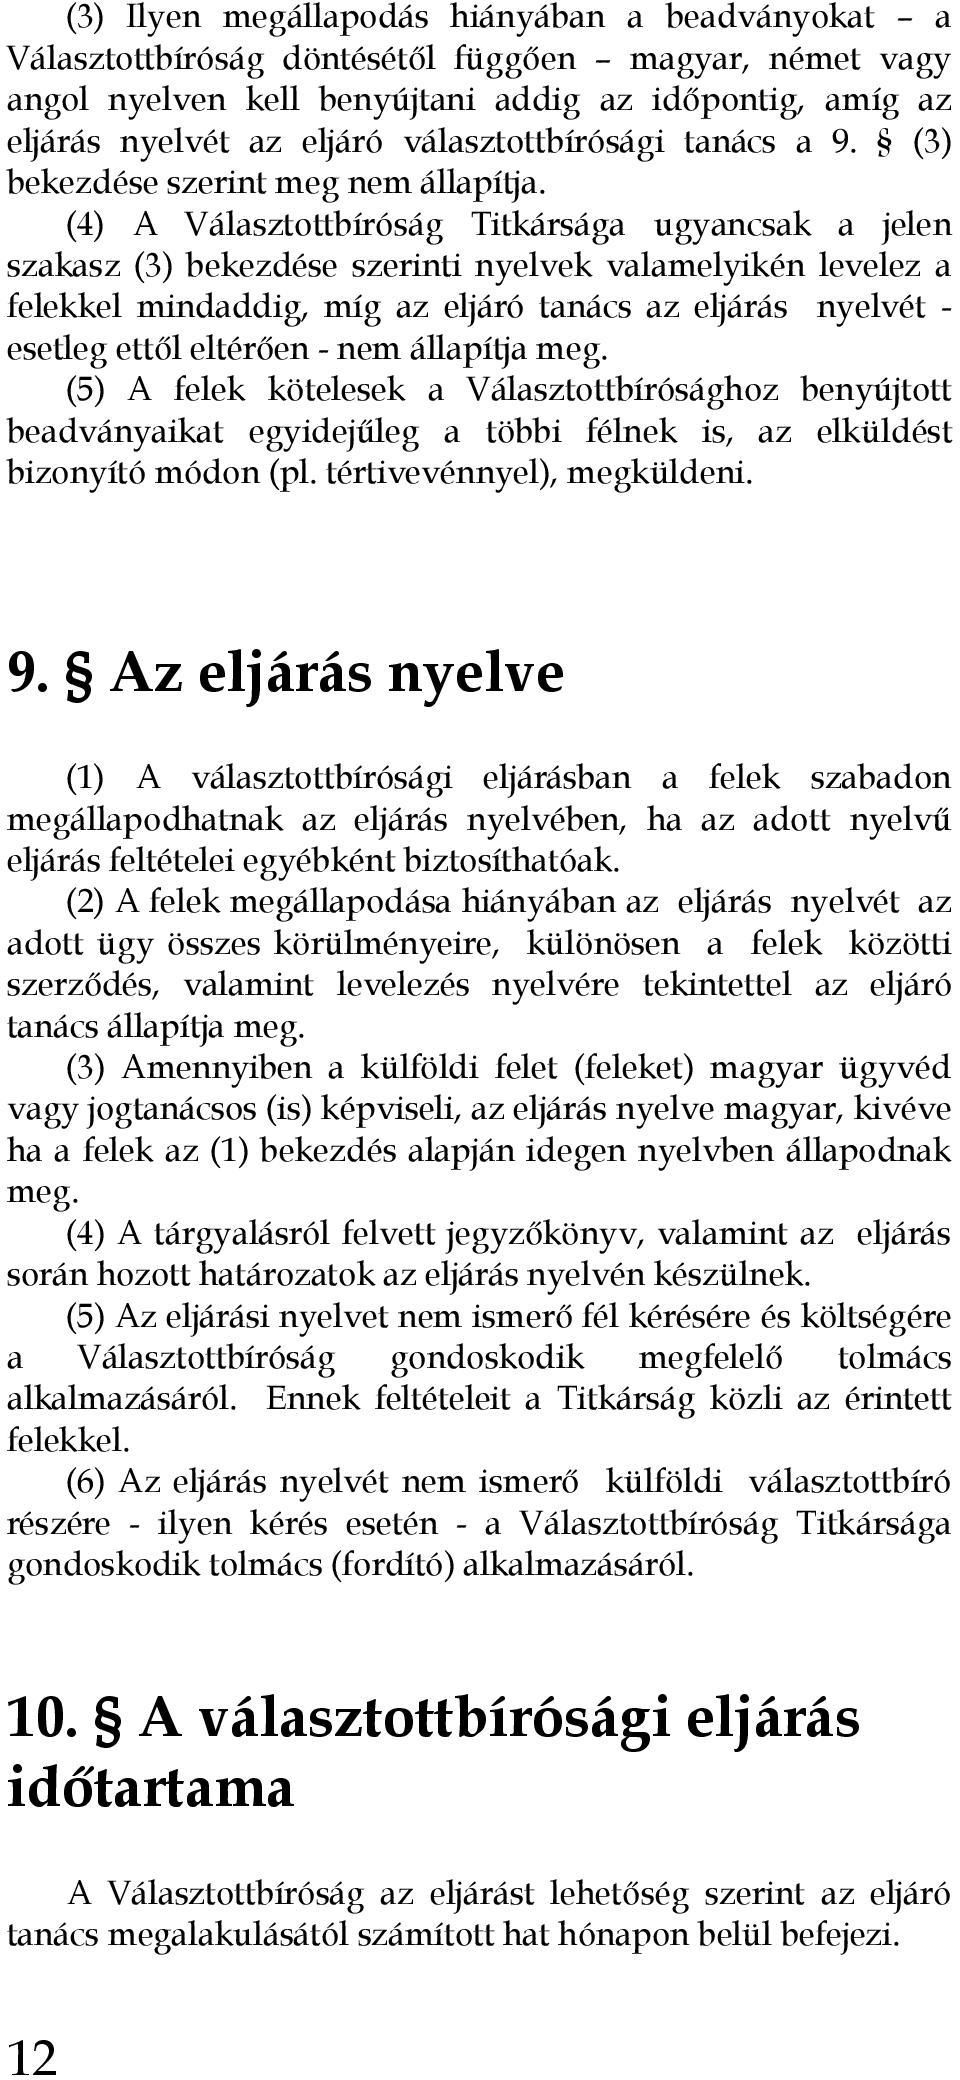 (4) A Választottbíróság Titkársága ugyancsak a jelen szakasz (3) bekezdése szerinti nyelvek valamelyikén levelez a felekkel mindaddig, míg az eljáró tanács az eljárás nyelvét - esetleg ettıl eltérıen